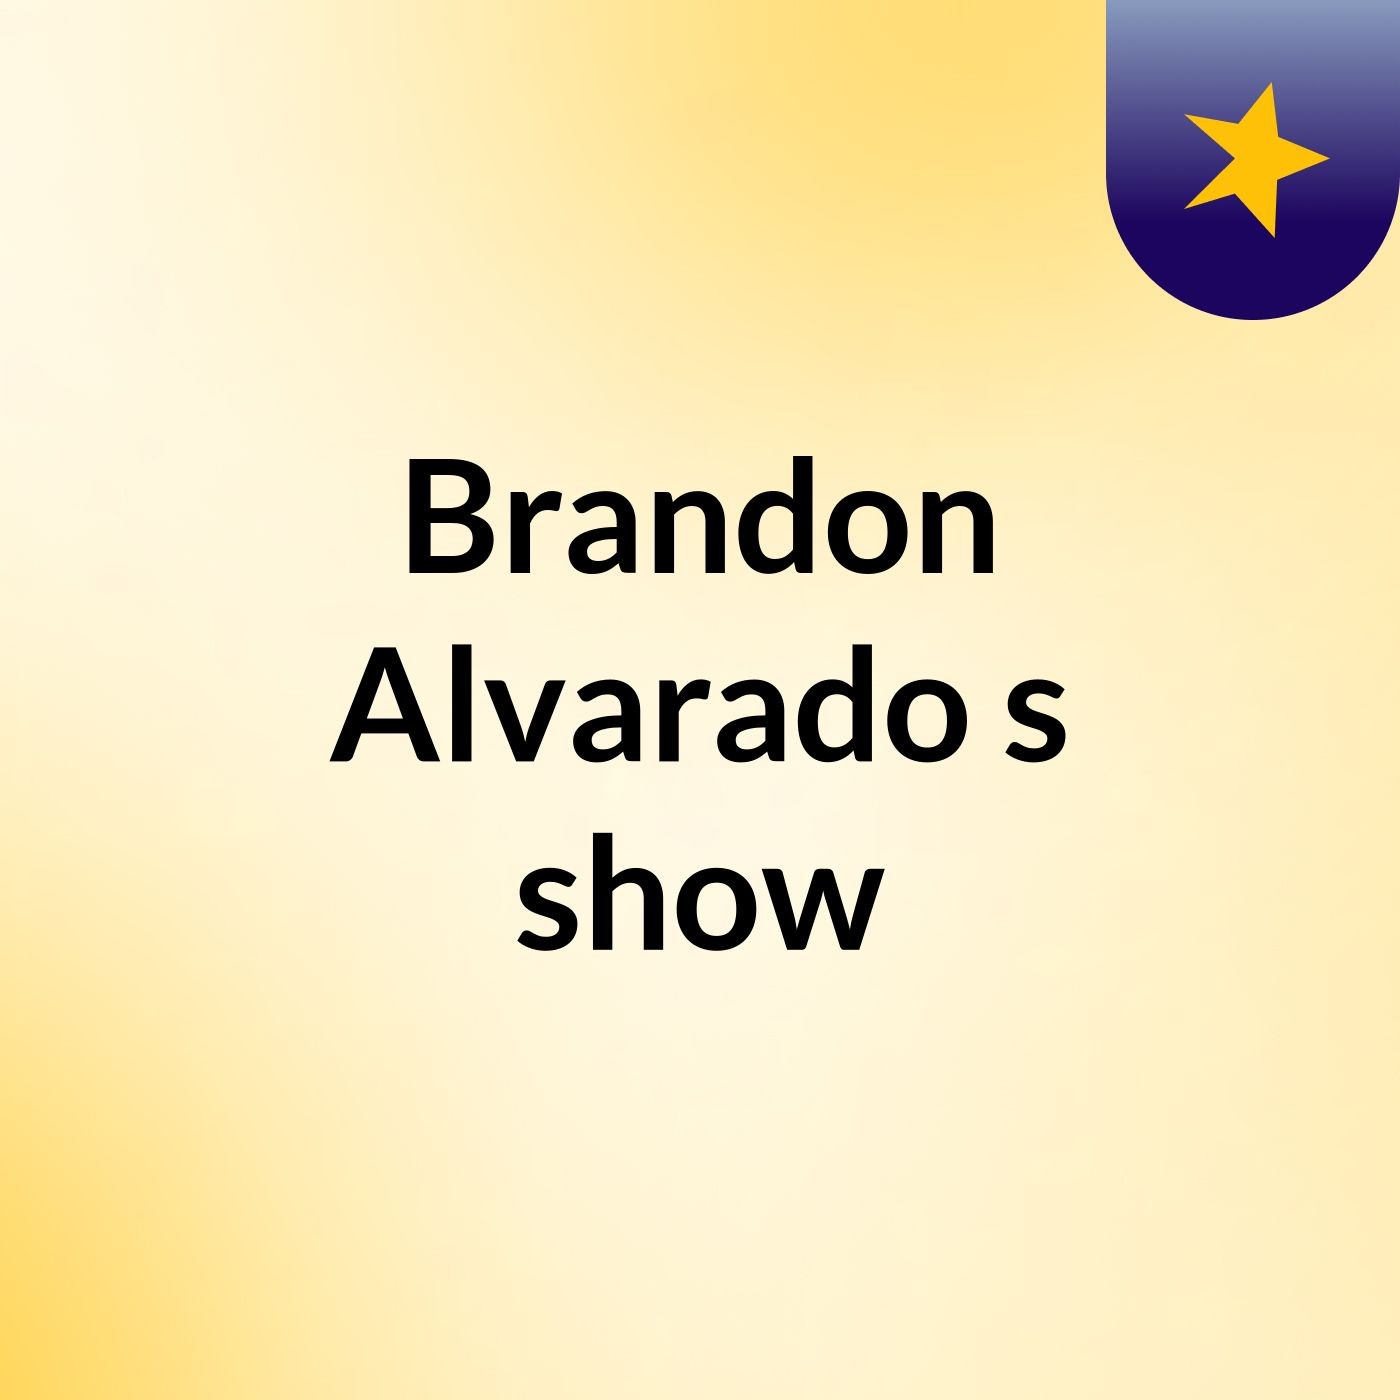 Episode 2 - Brandon Alvarado's show